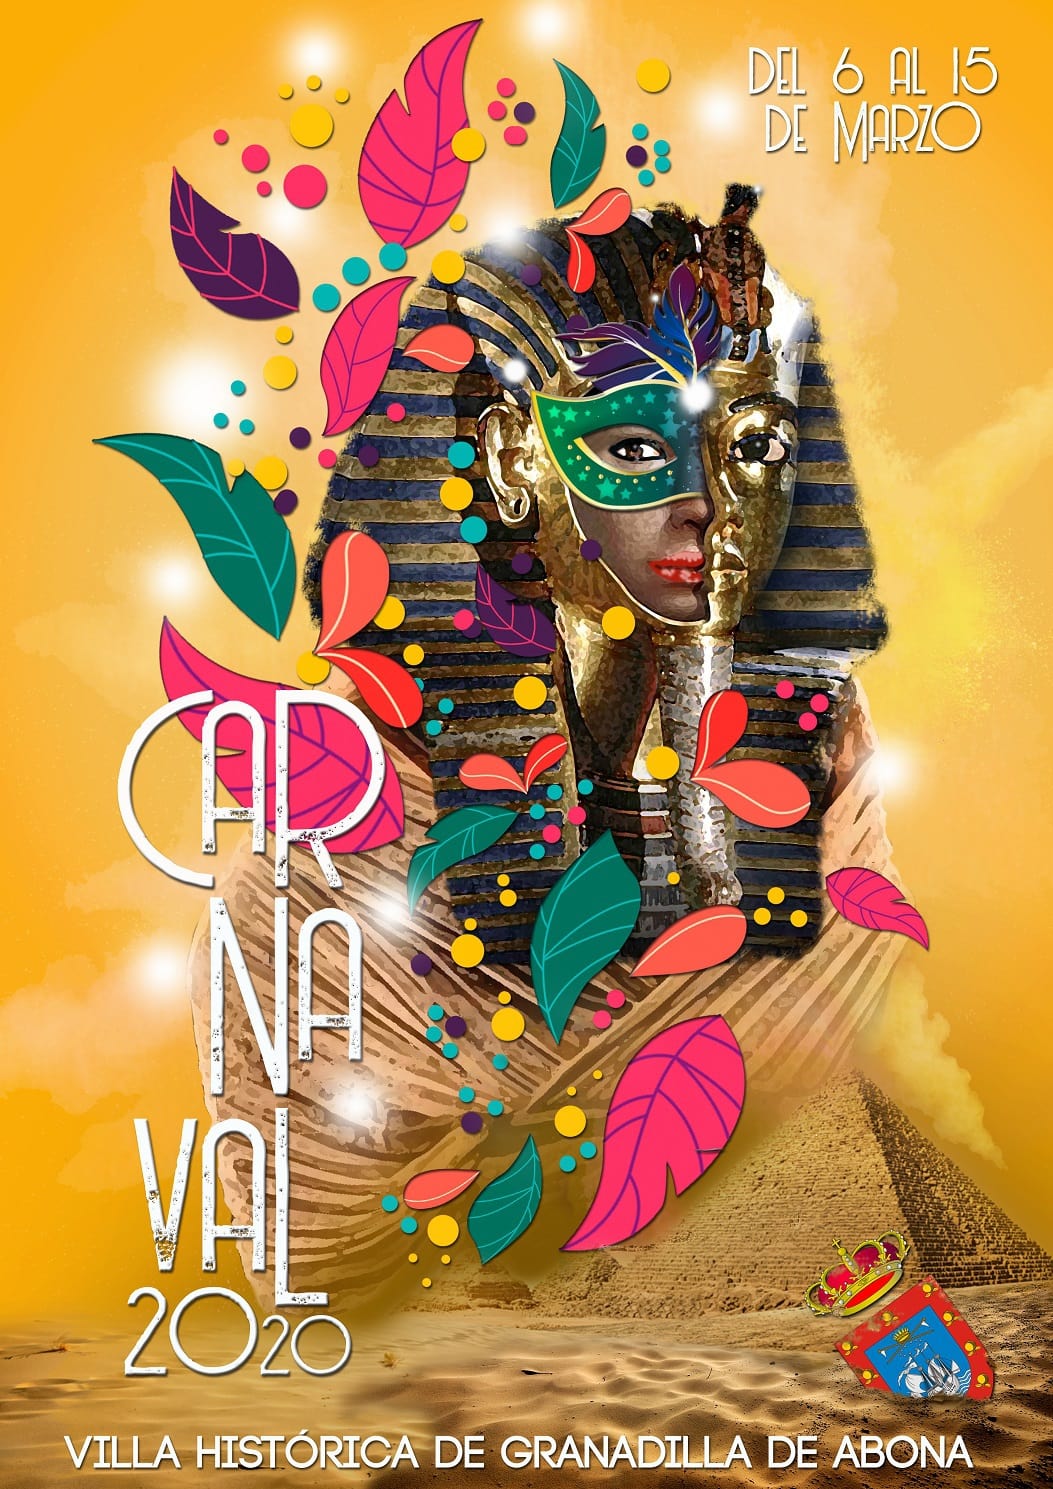 El Carnaval 2020 de Granadilla de Abona, con la temática ‘Egipto’, del 6 al 15 de marzo